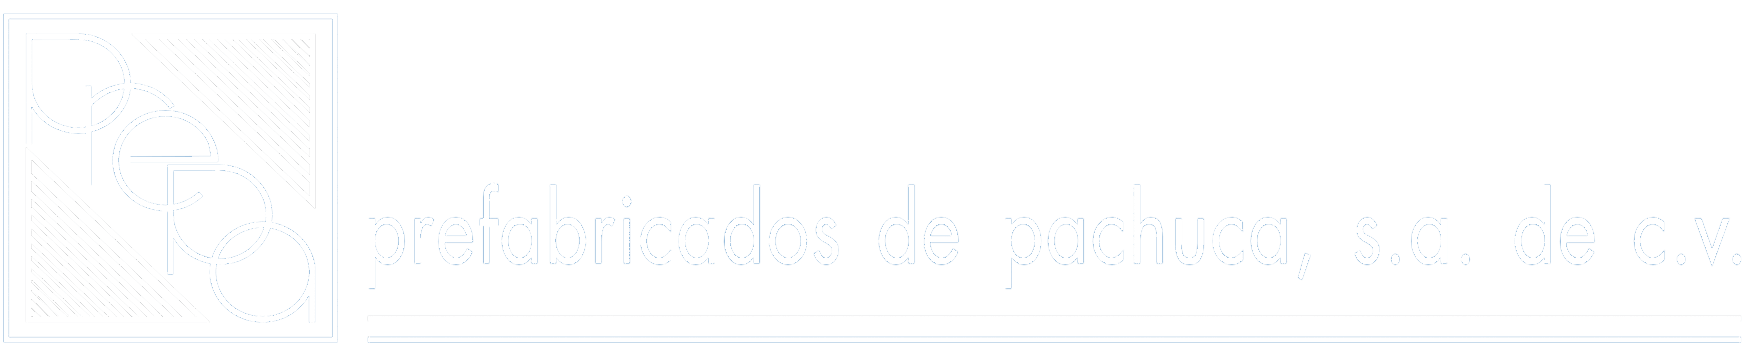 Logo de prefabricados de pachuca S.A. de C.V.